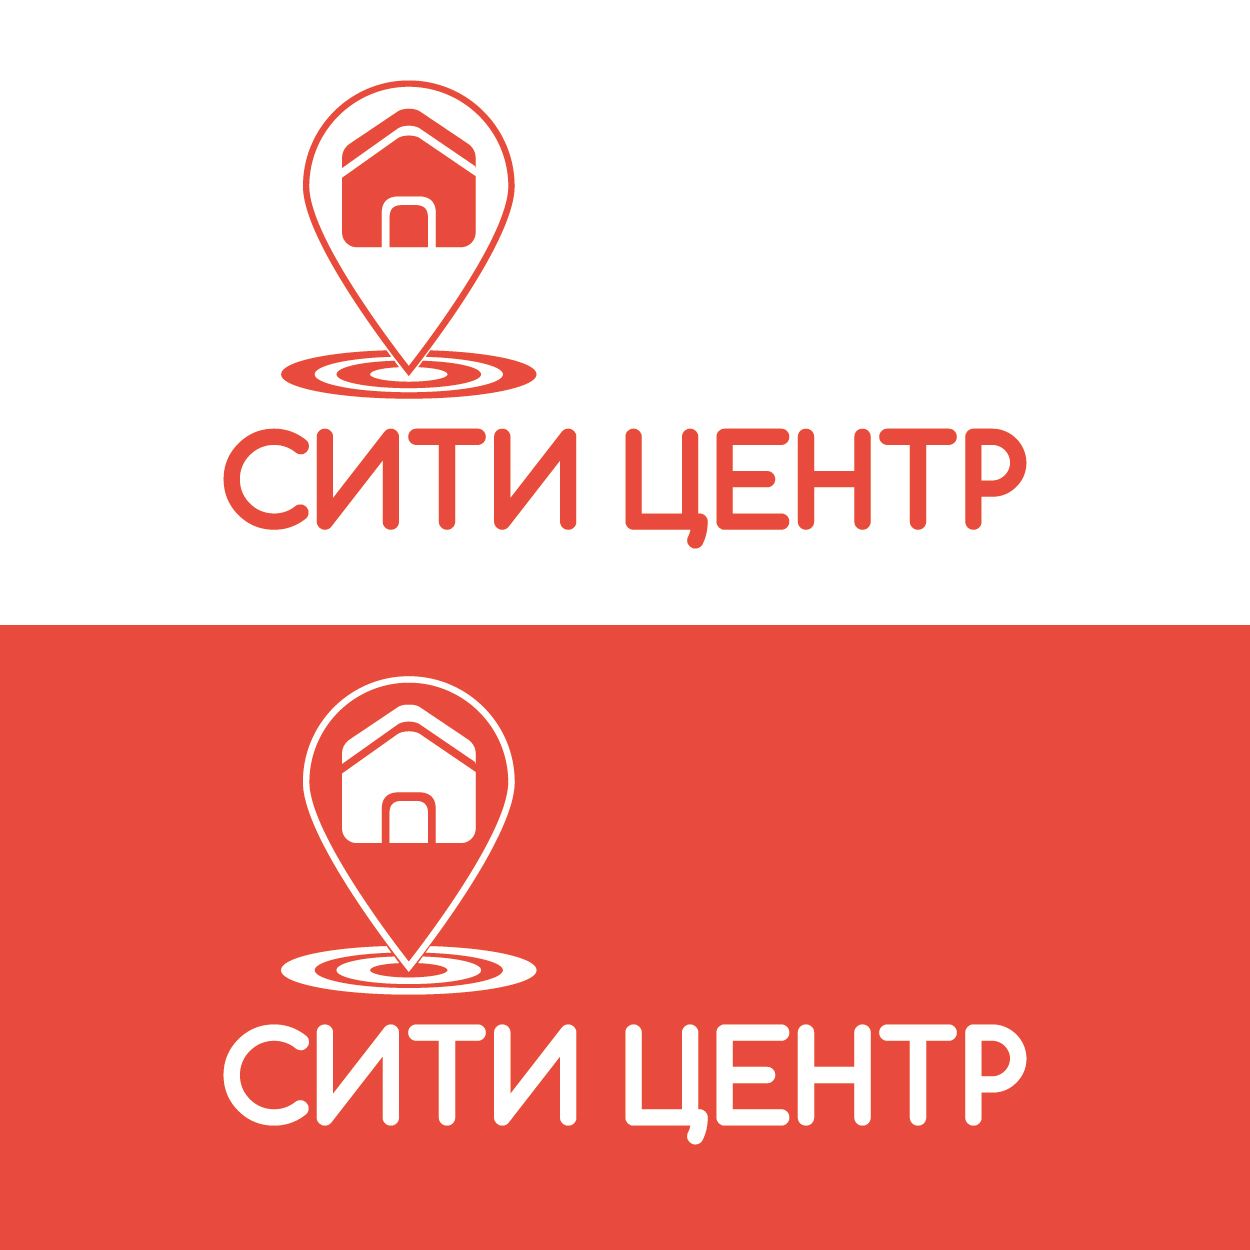 Редизайн логотипа агентства недвижимости - дизайнер klyax